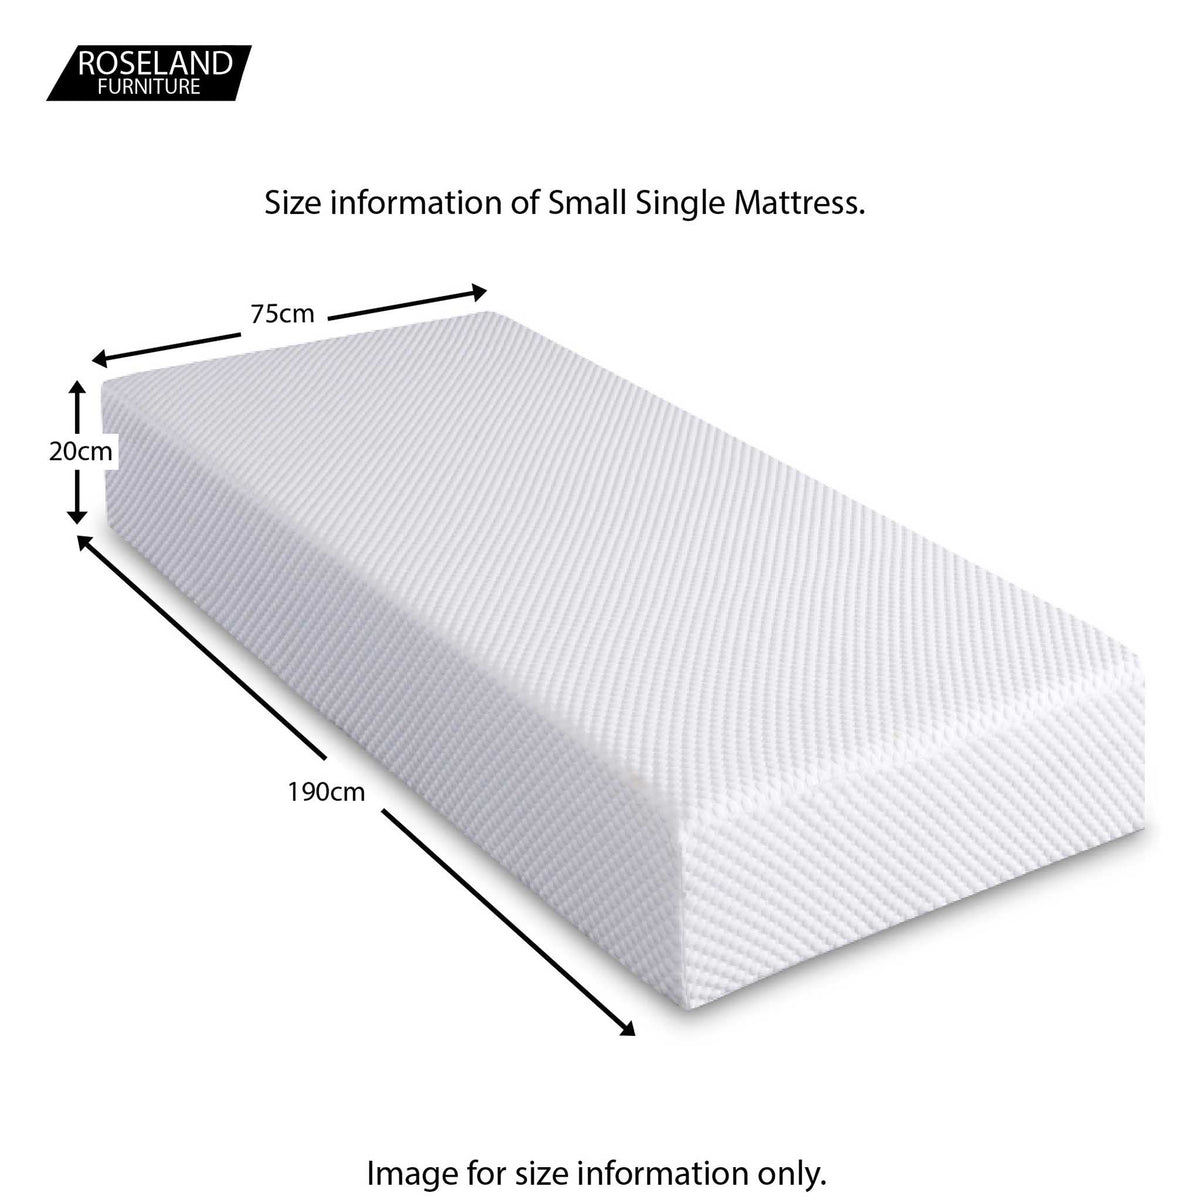 MemoryPedic Memory 2000 Viscoelastic Memory Foam & Reflex Foam Mattresses - kids 2ft6 small single size guide